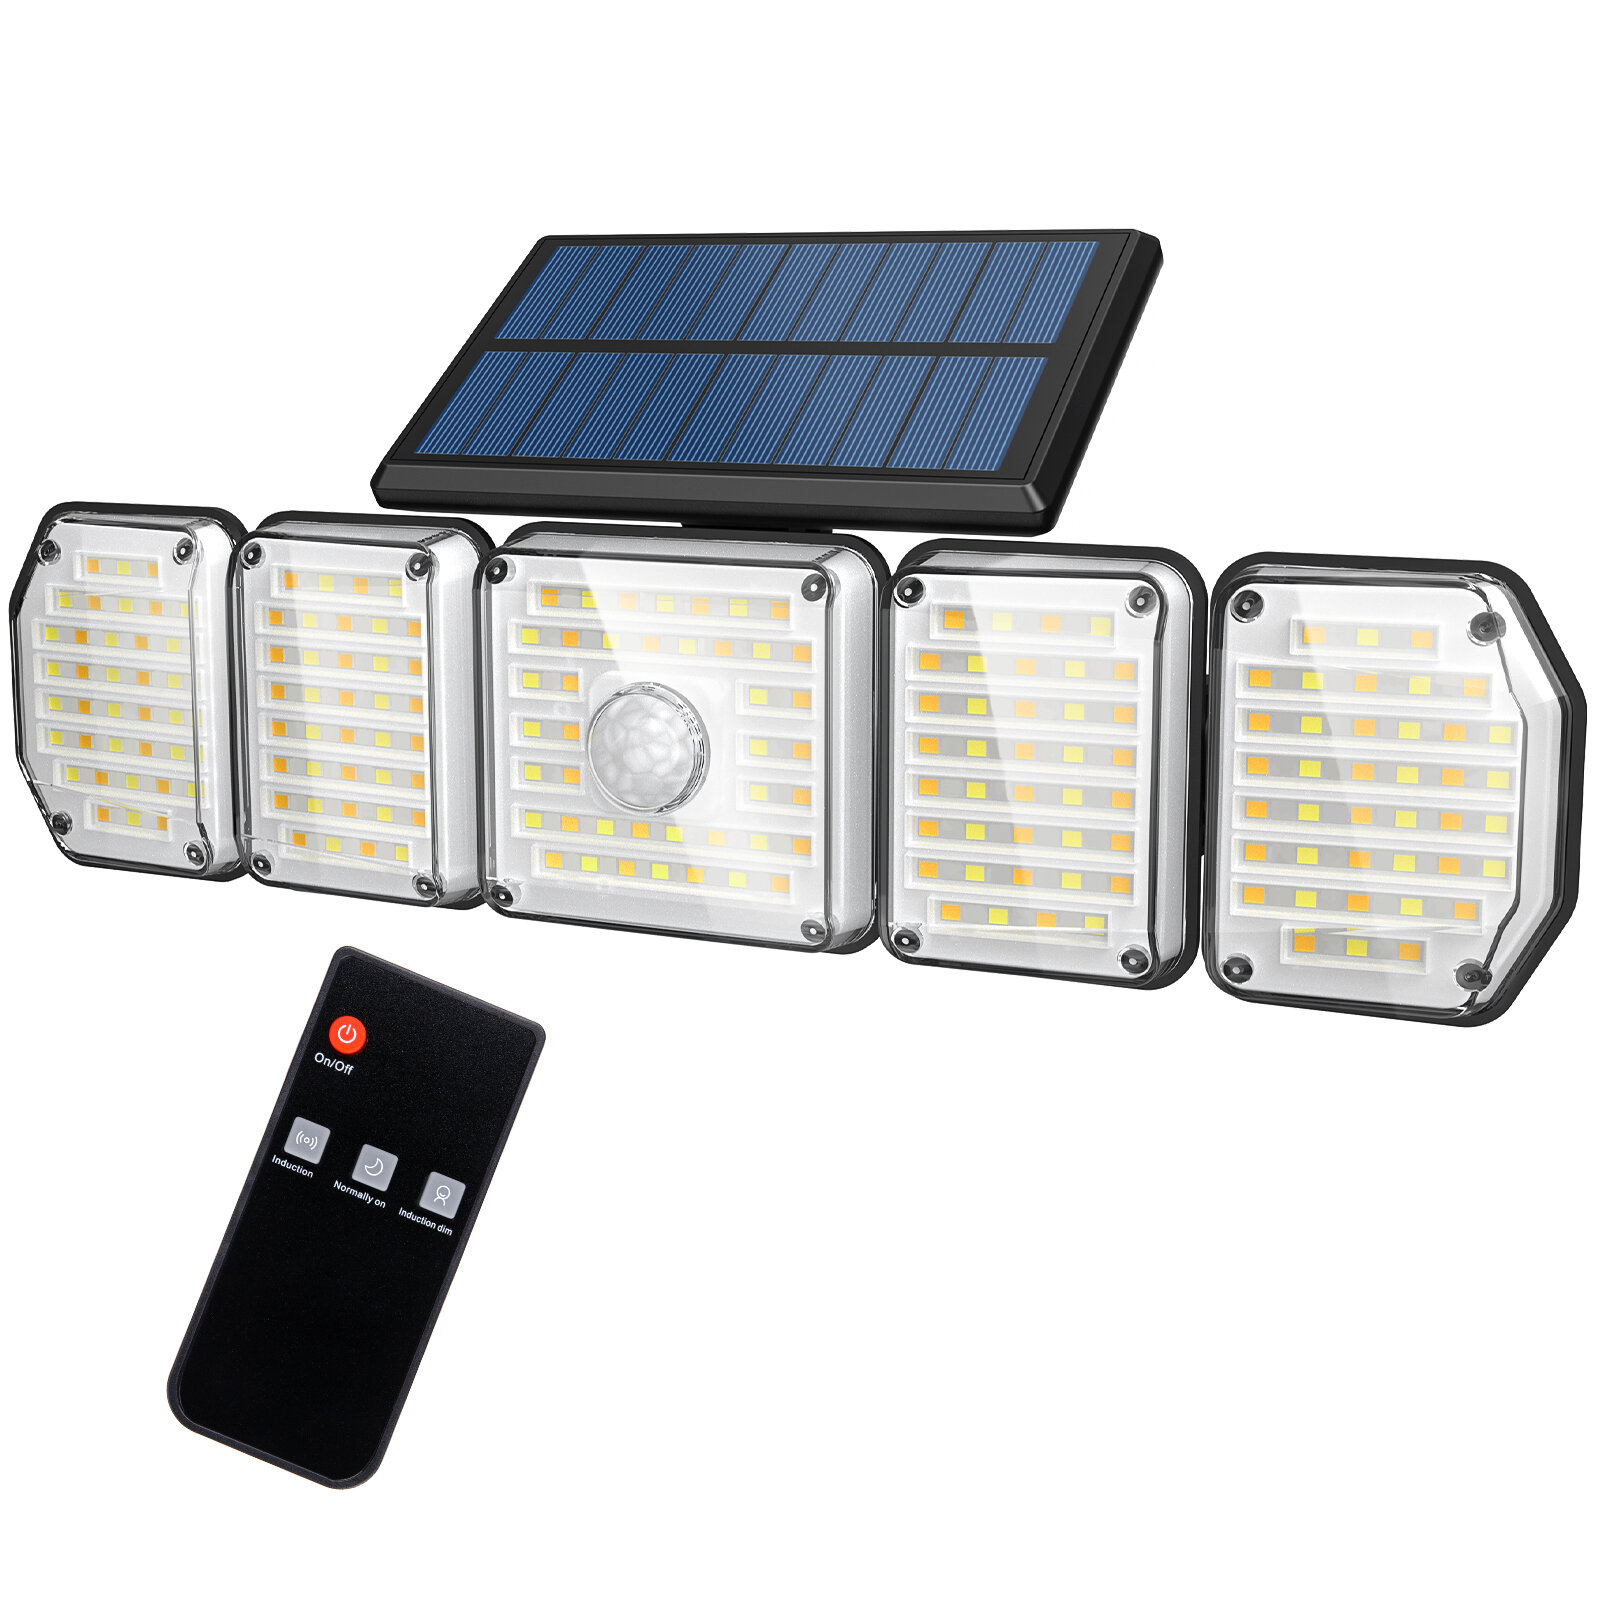 Lampka solarna Somoreal SM-OLT2 z EU za $18.99 / ~77zł